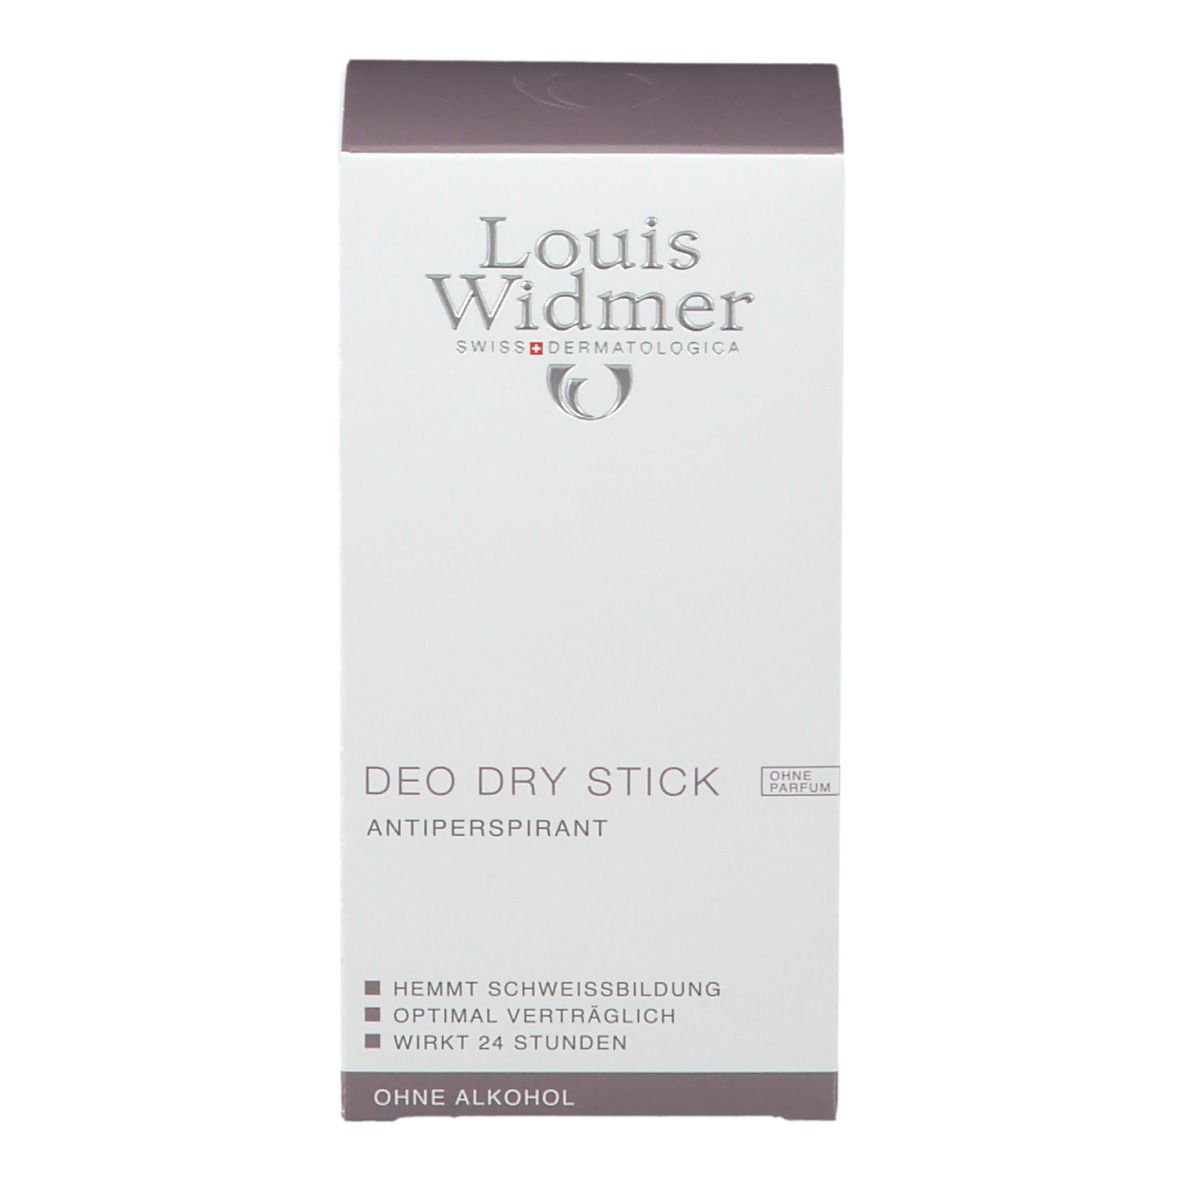 Louis Widmer Deo Dry Stick unparfümiert